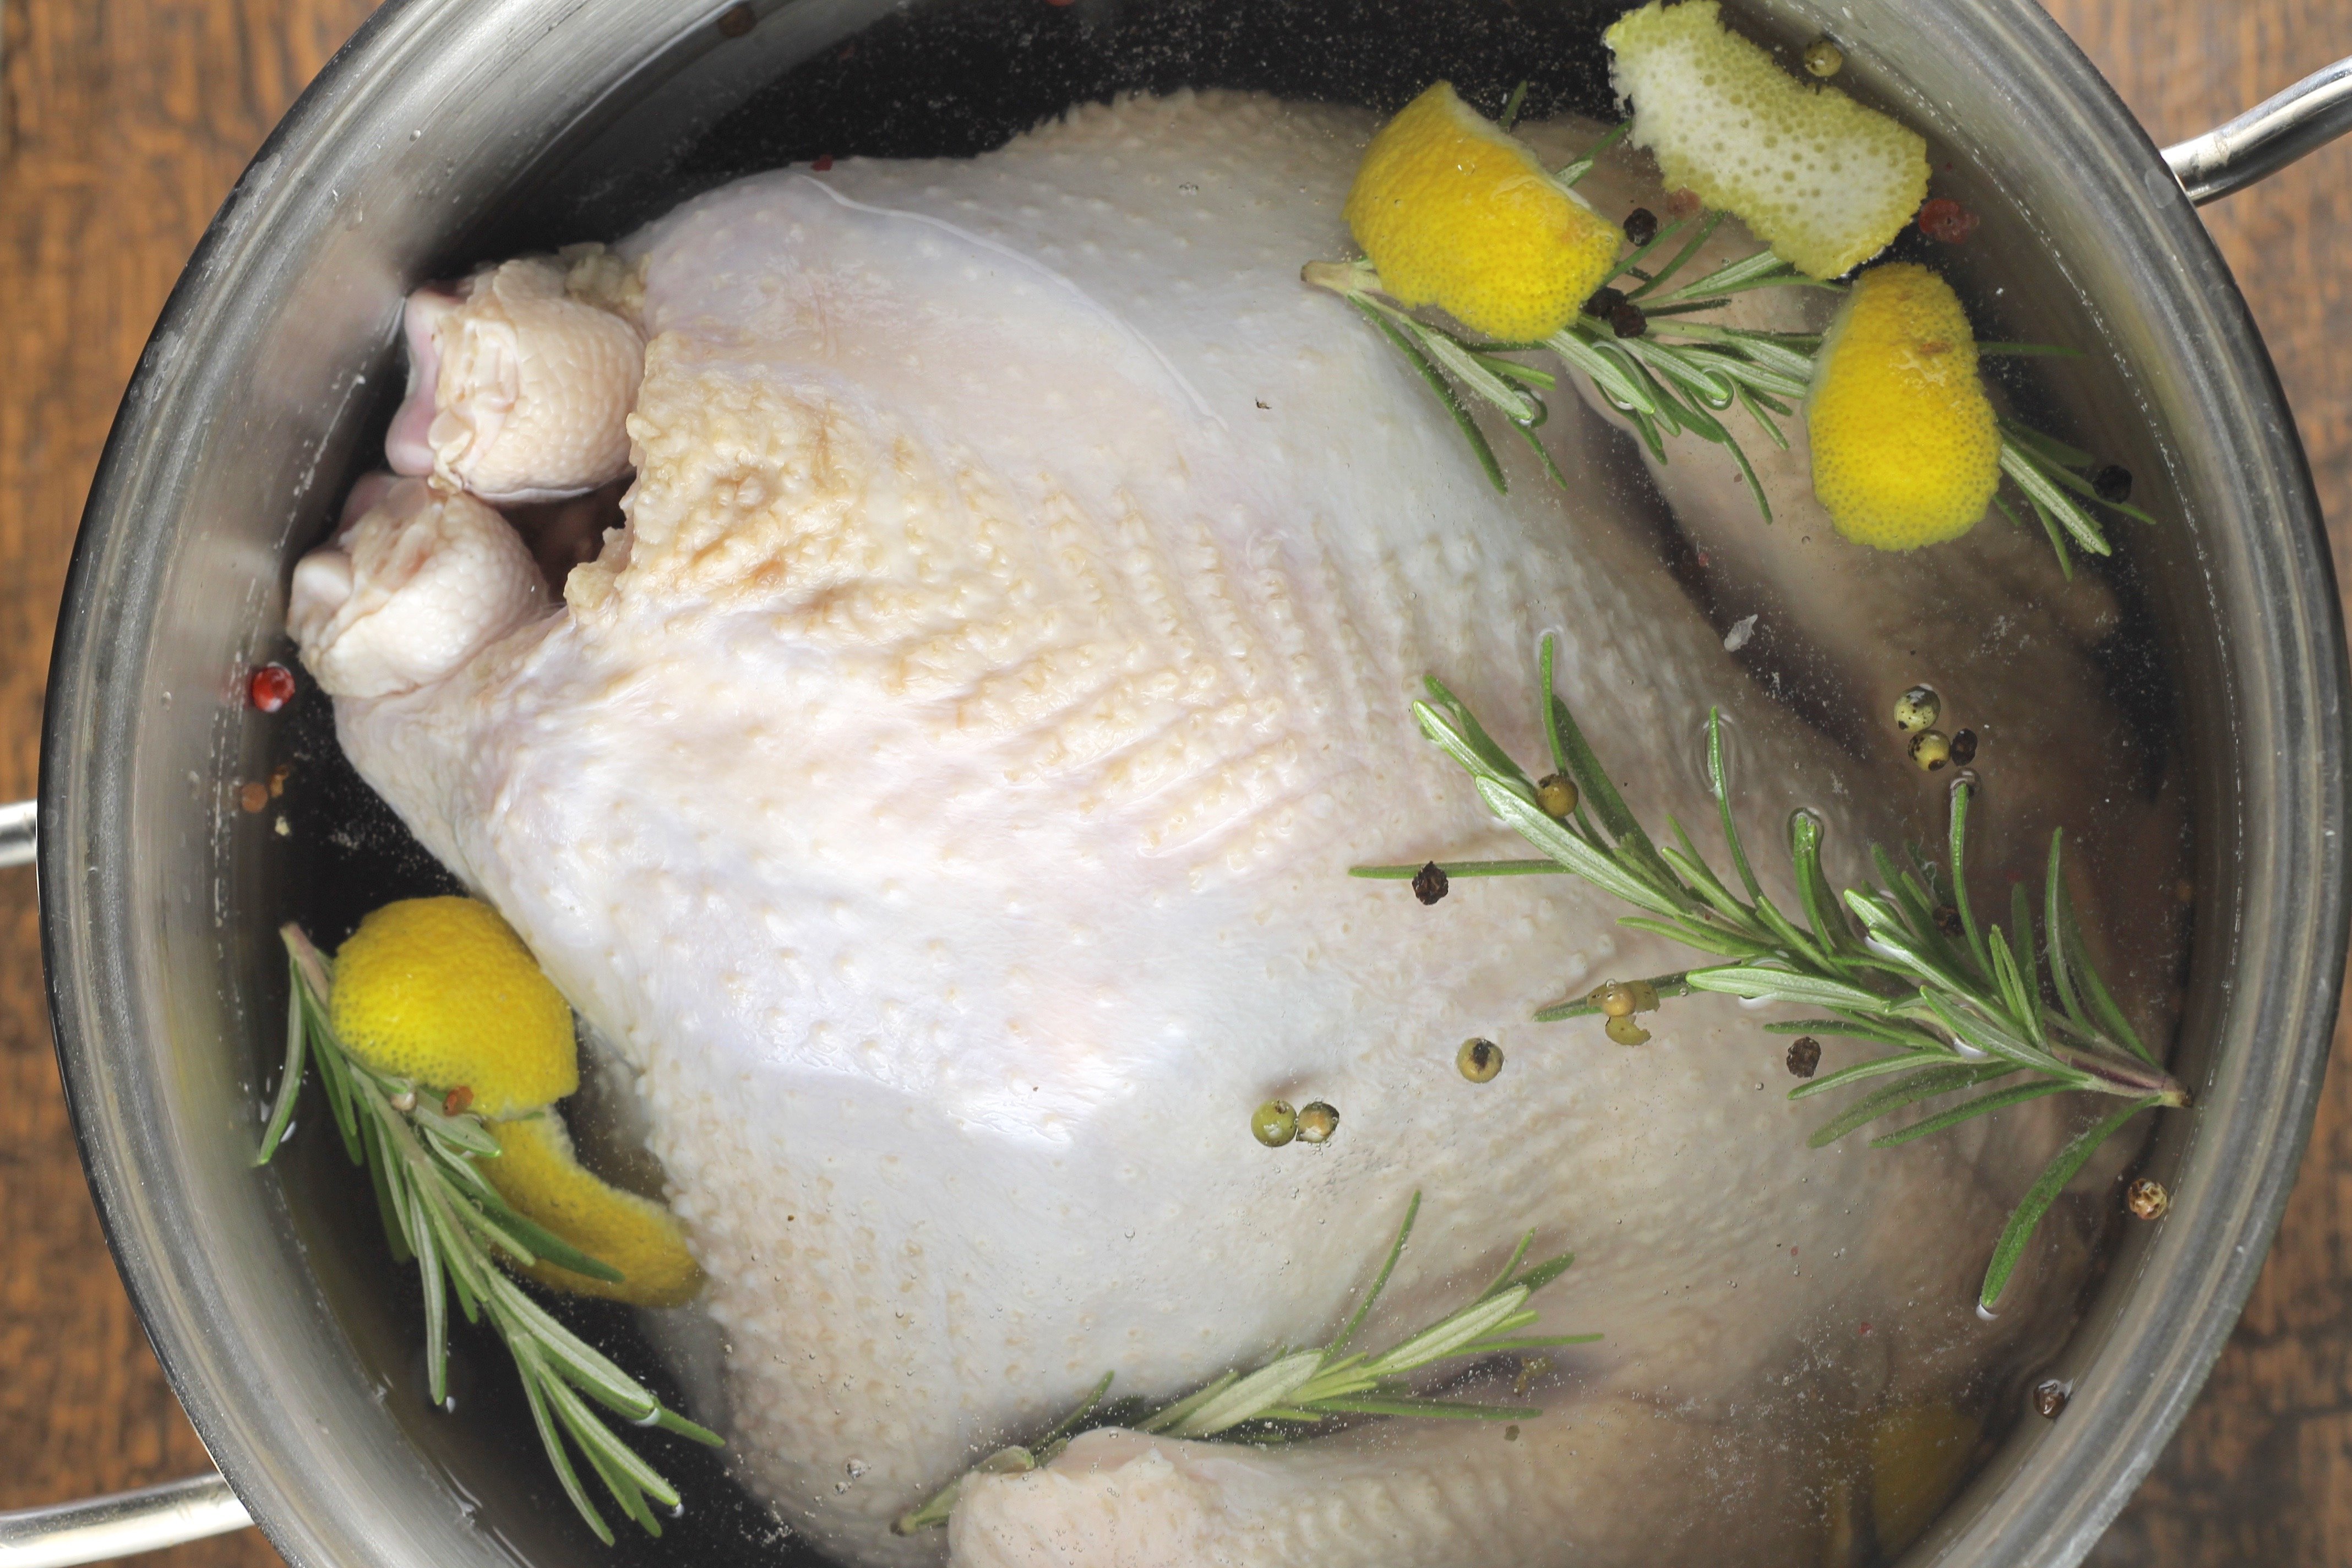 How to brine a turkey or chicken